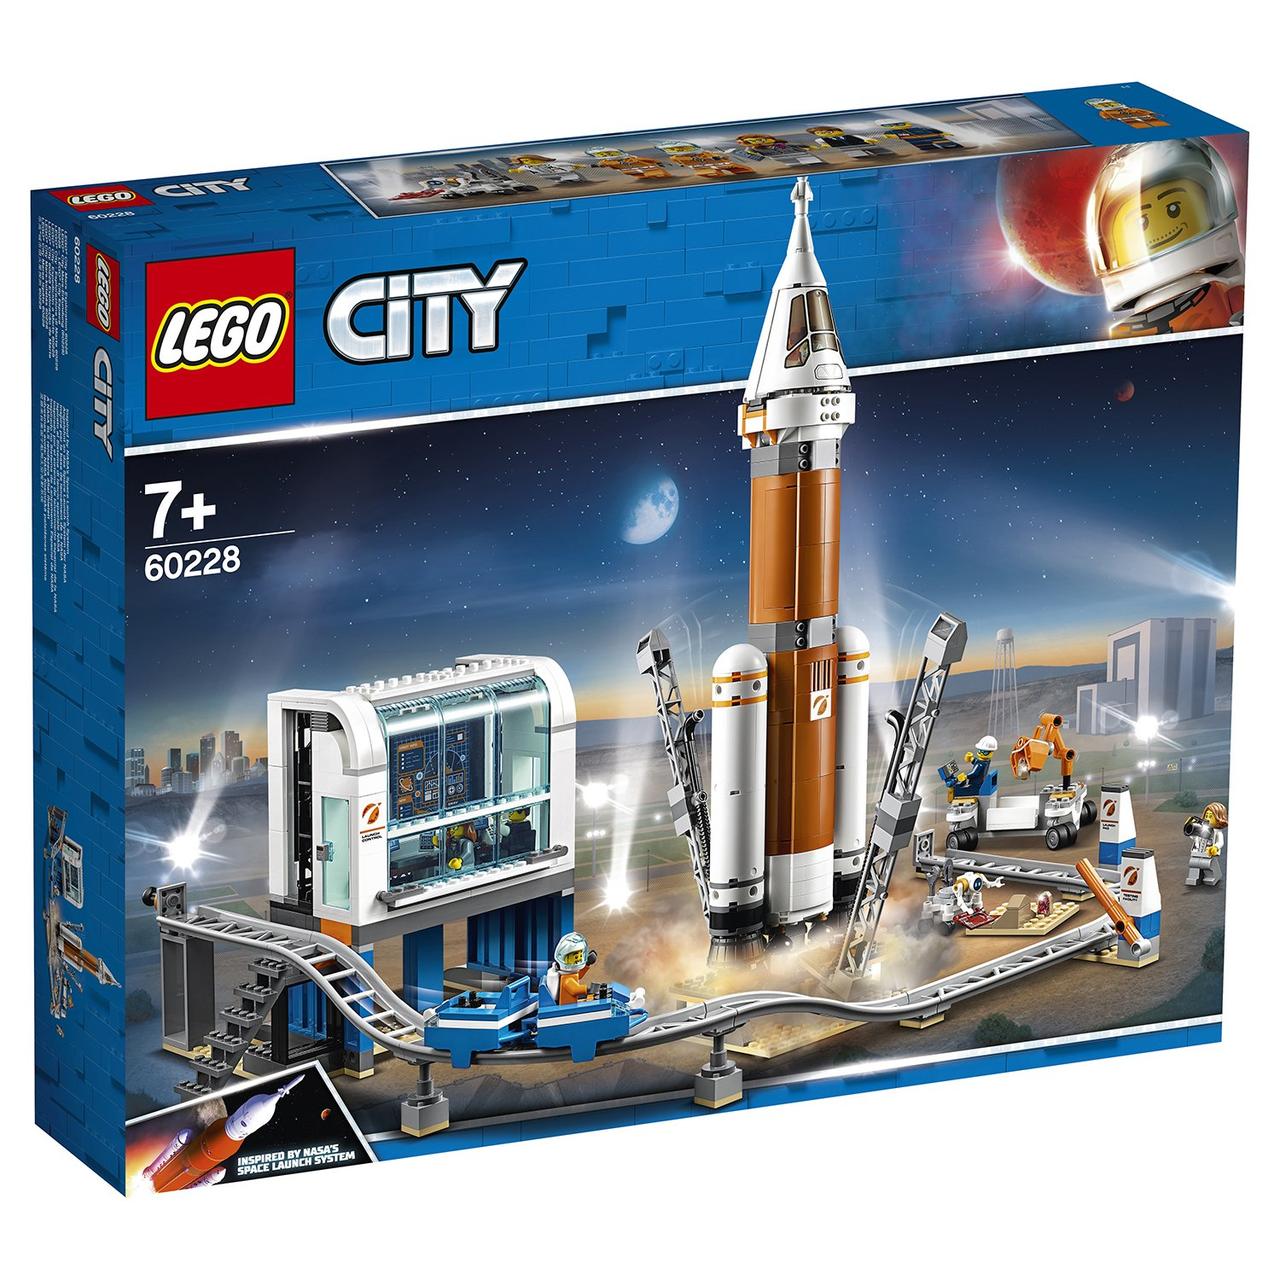 60228 Lego City Ракета для запуска в далекий космос и пульт управления запуском, Лего Город Сити